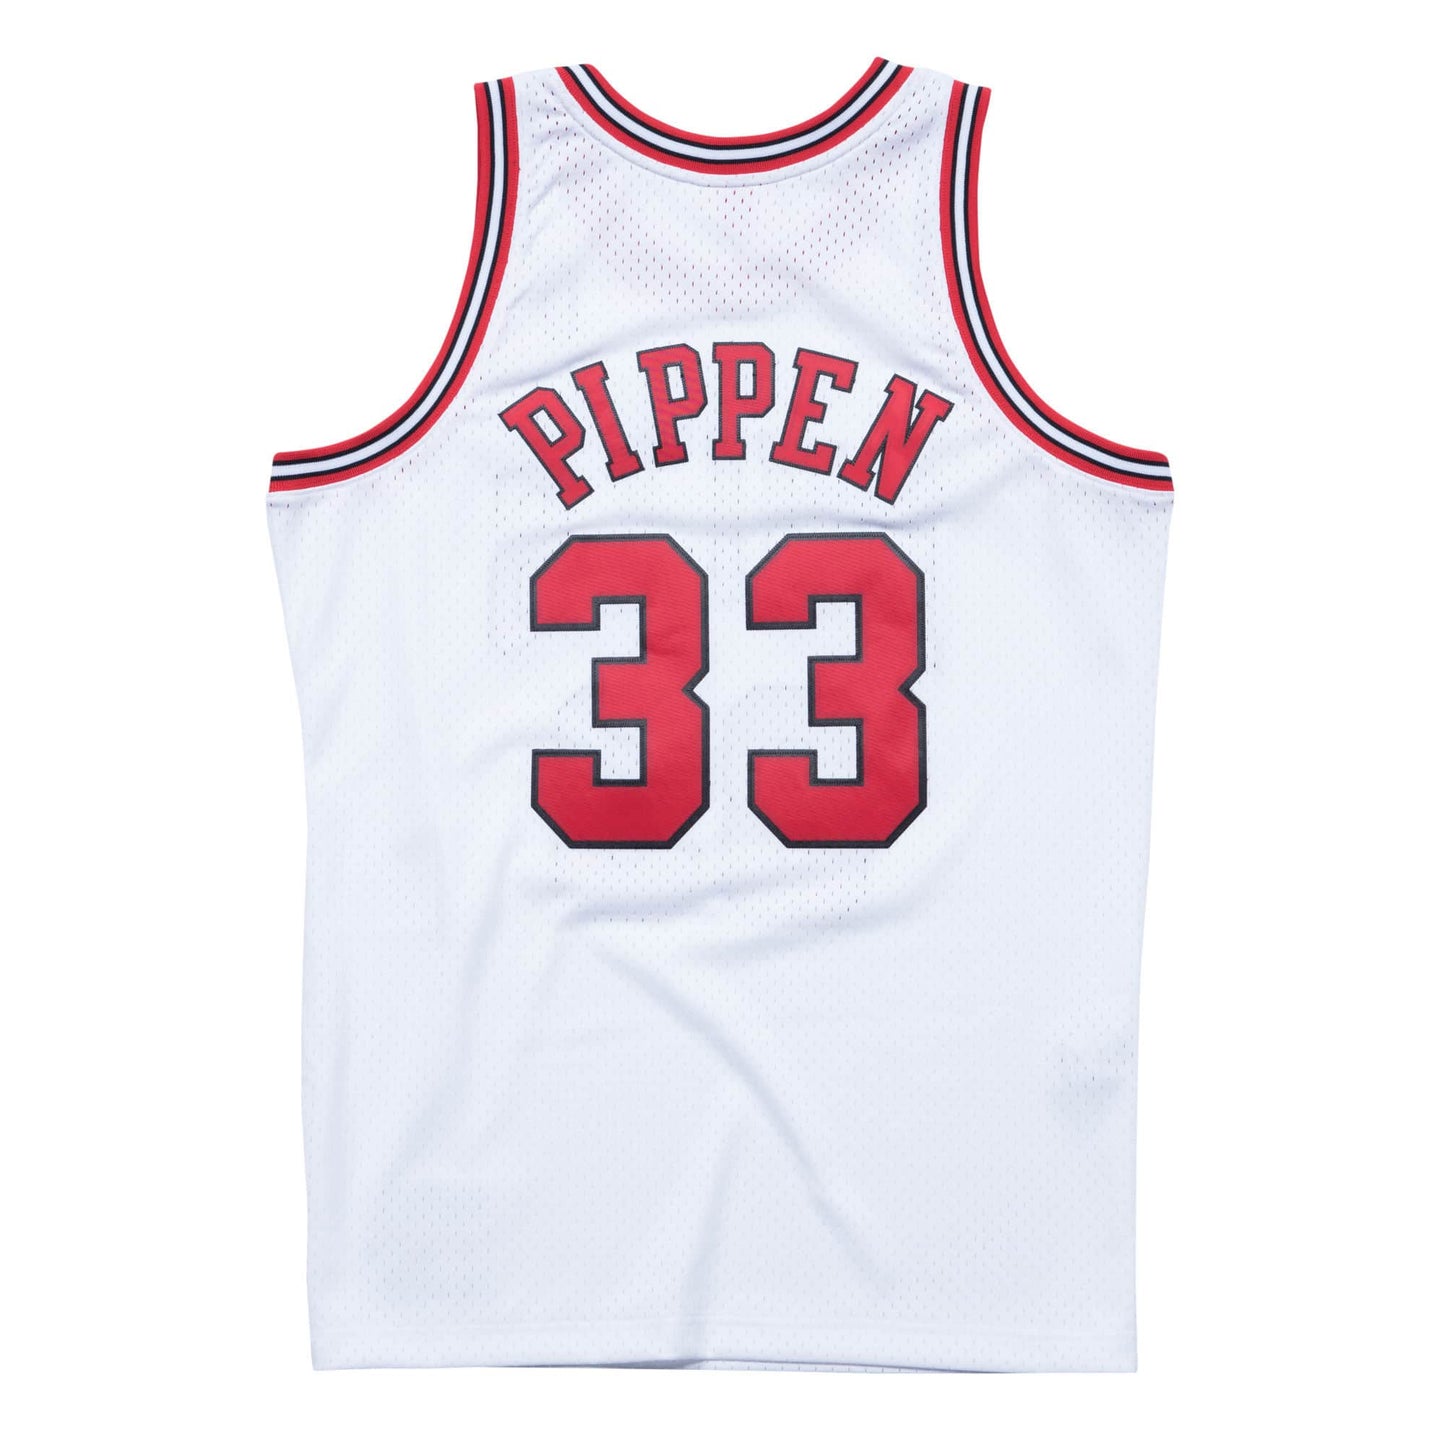 NBA Swingman Jersey Chicago Bulls Home 1997-98 Scottie Pippen